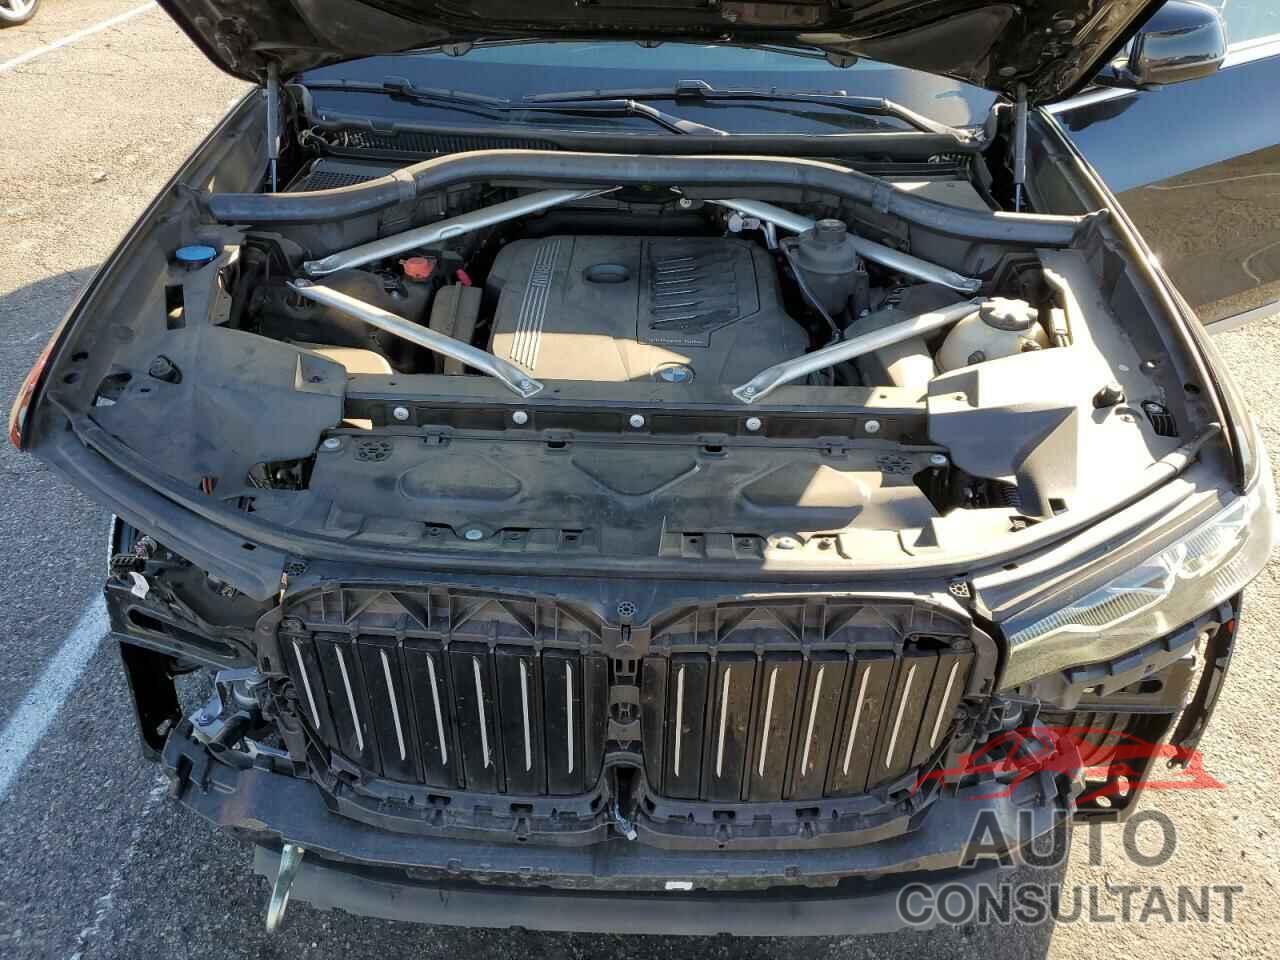 BMW X7 2019 - 5UXCW2C50KL083234